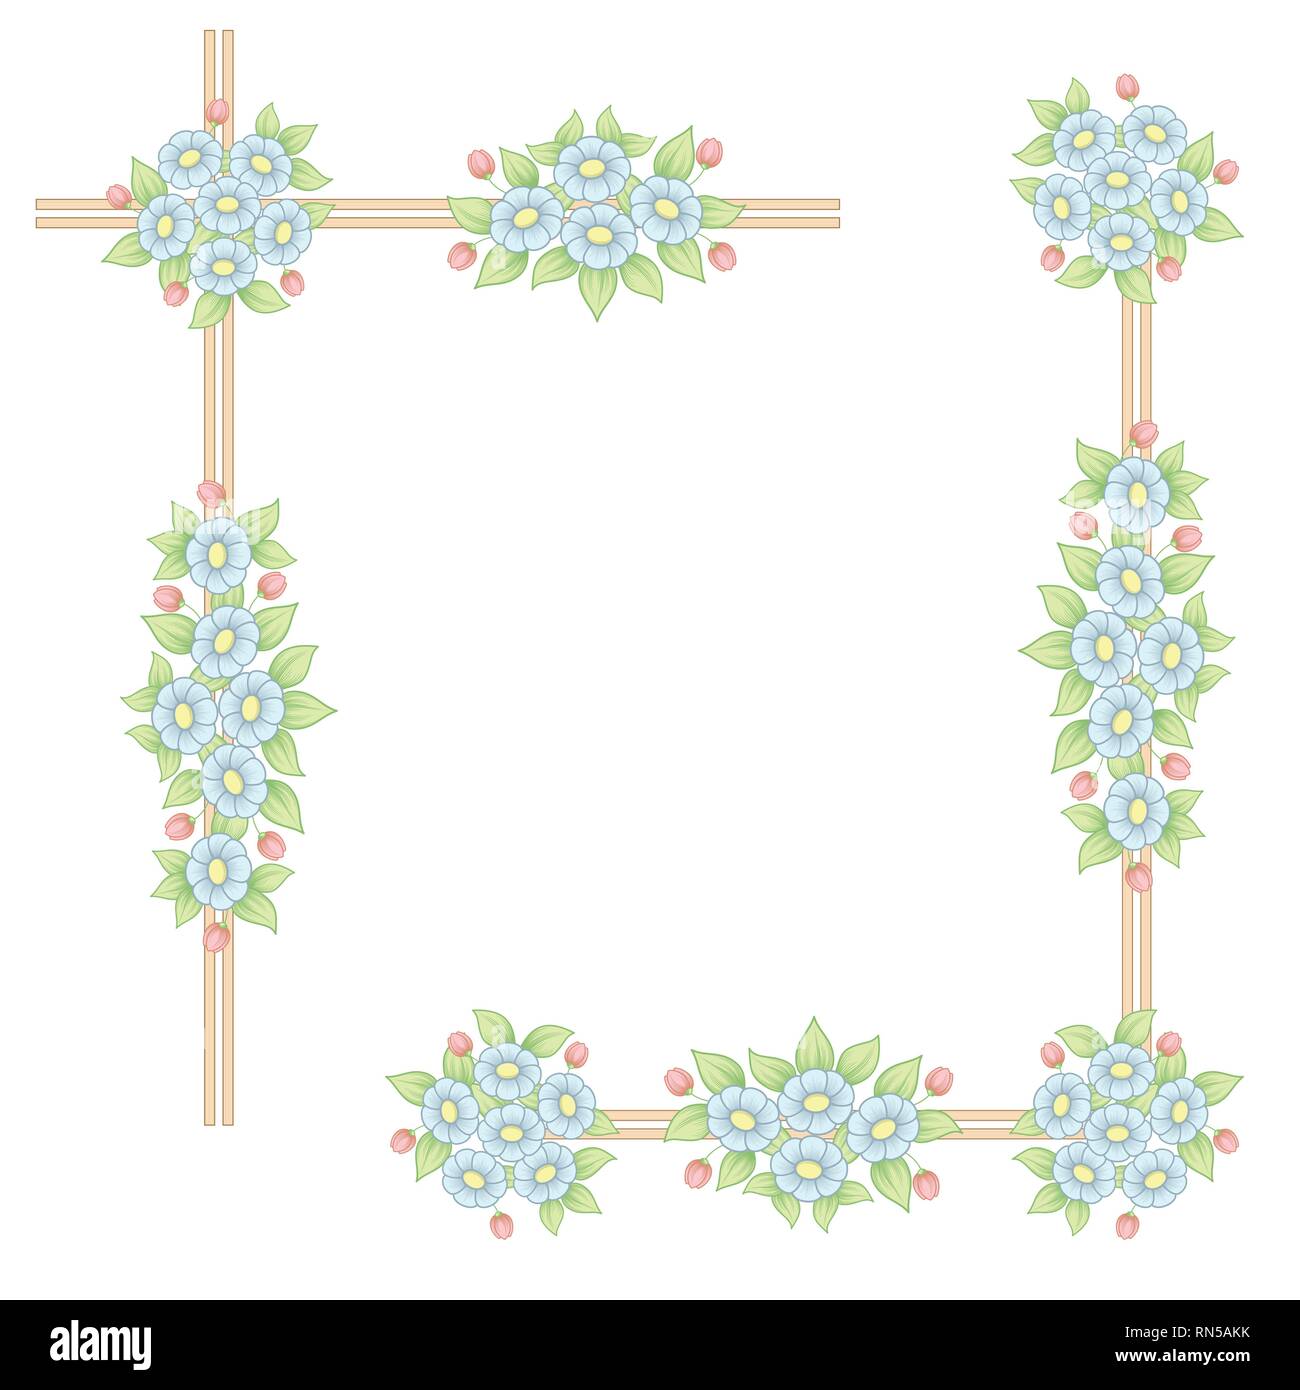 Deux cadres d'angle floral marguerites couleur pastelle isolé sur fond blanc Illustration de Vecteur